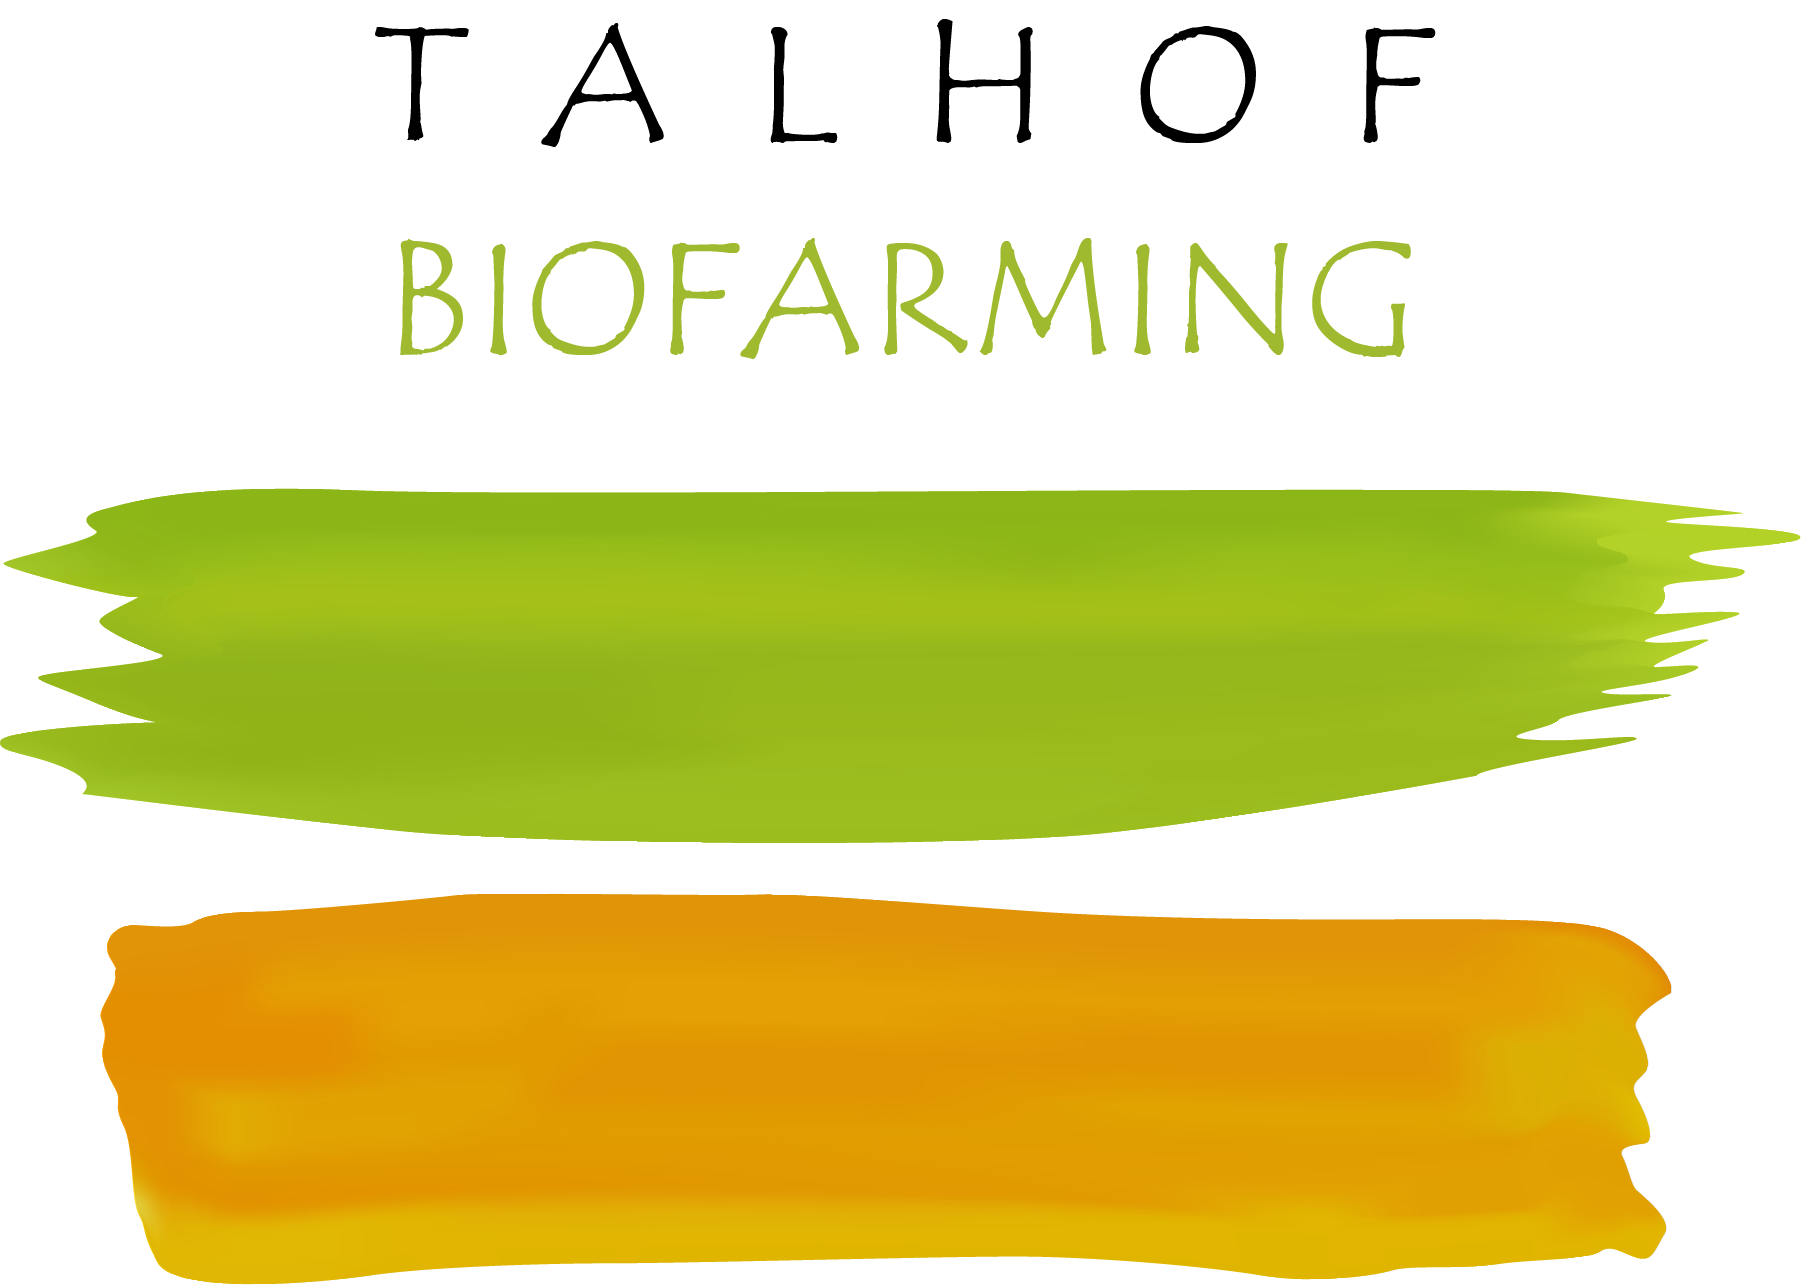 Talhof Biofarming